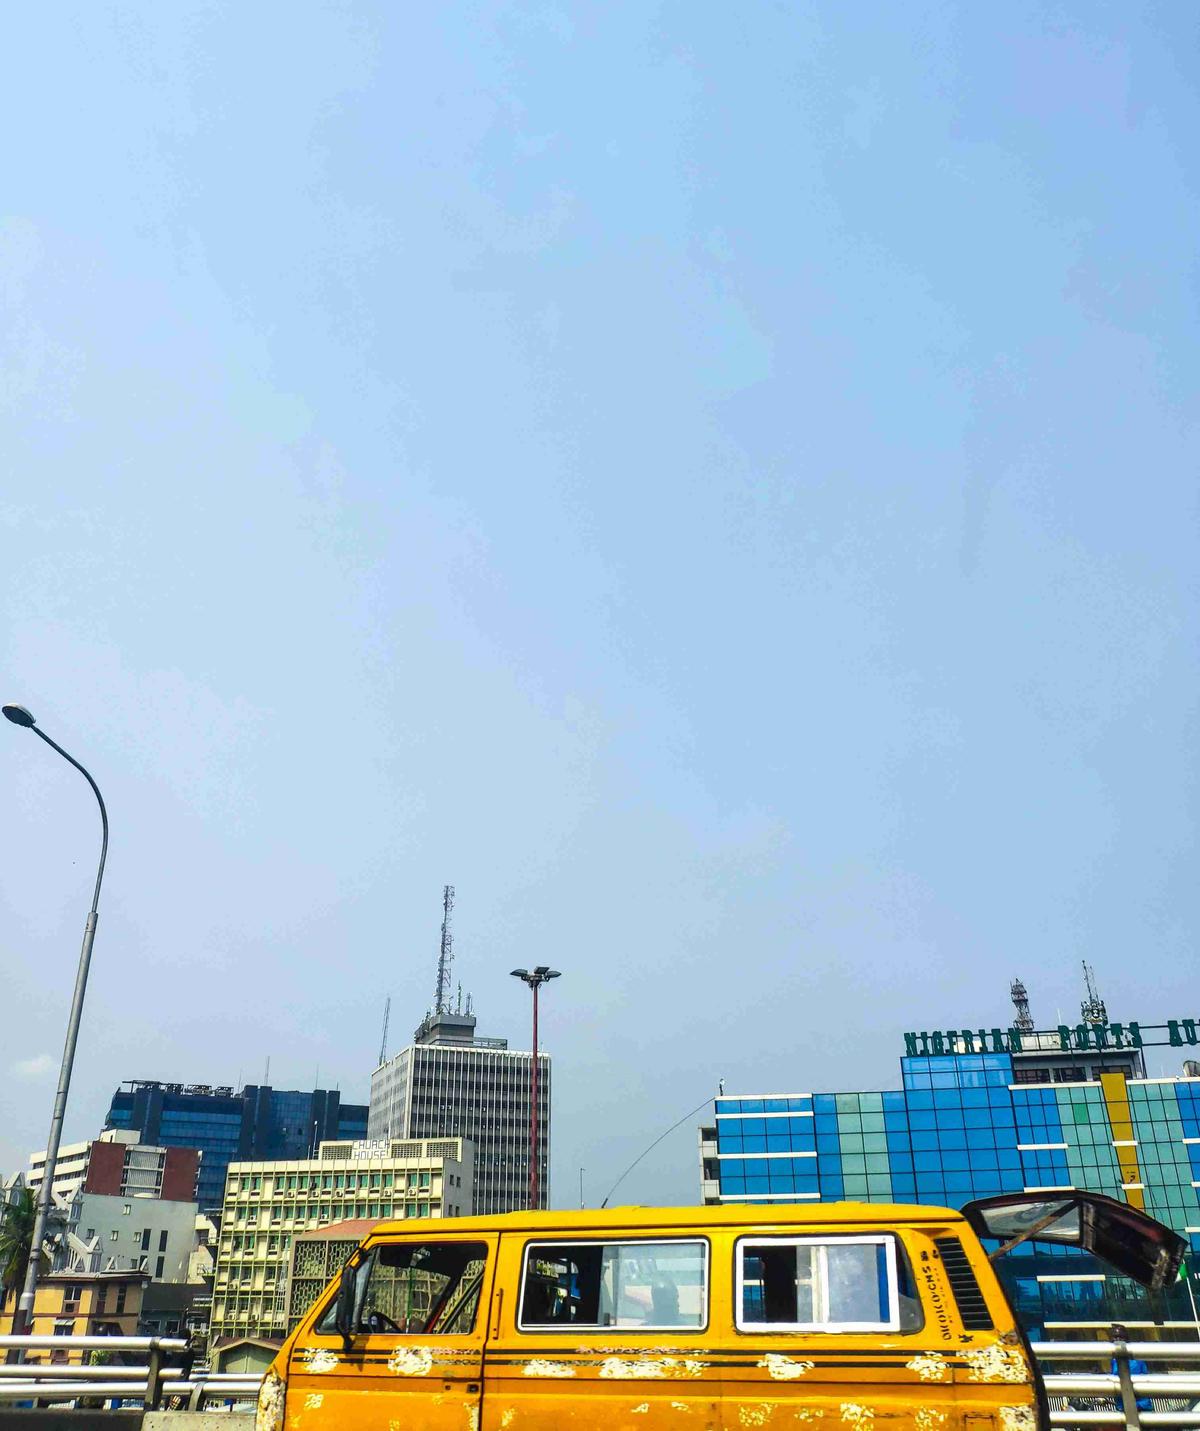 Желтый автобус в городском пейзаже с современными зданиями на фоне ясного неба